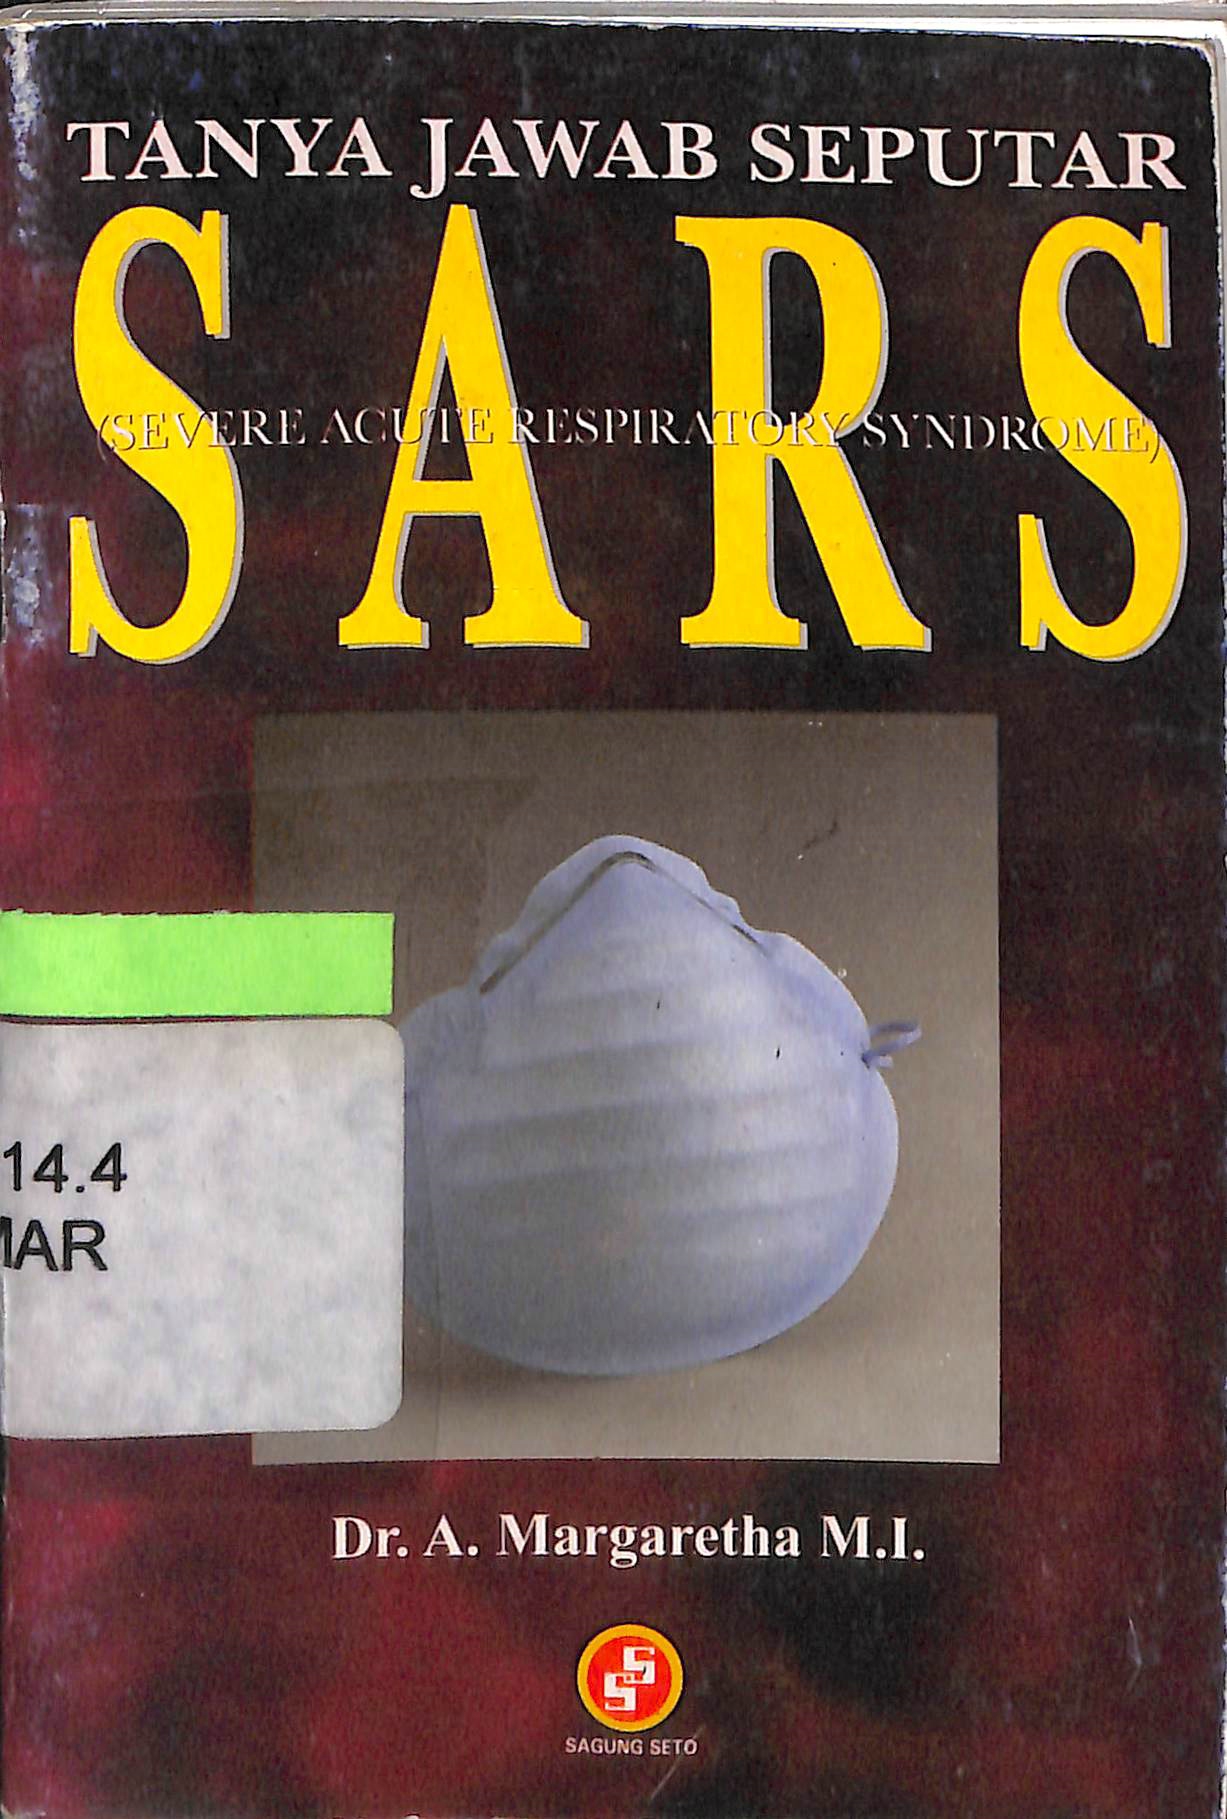 Tanya jawab seputar SARS